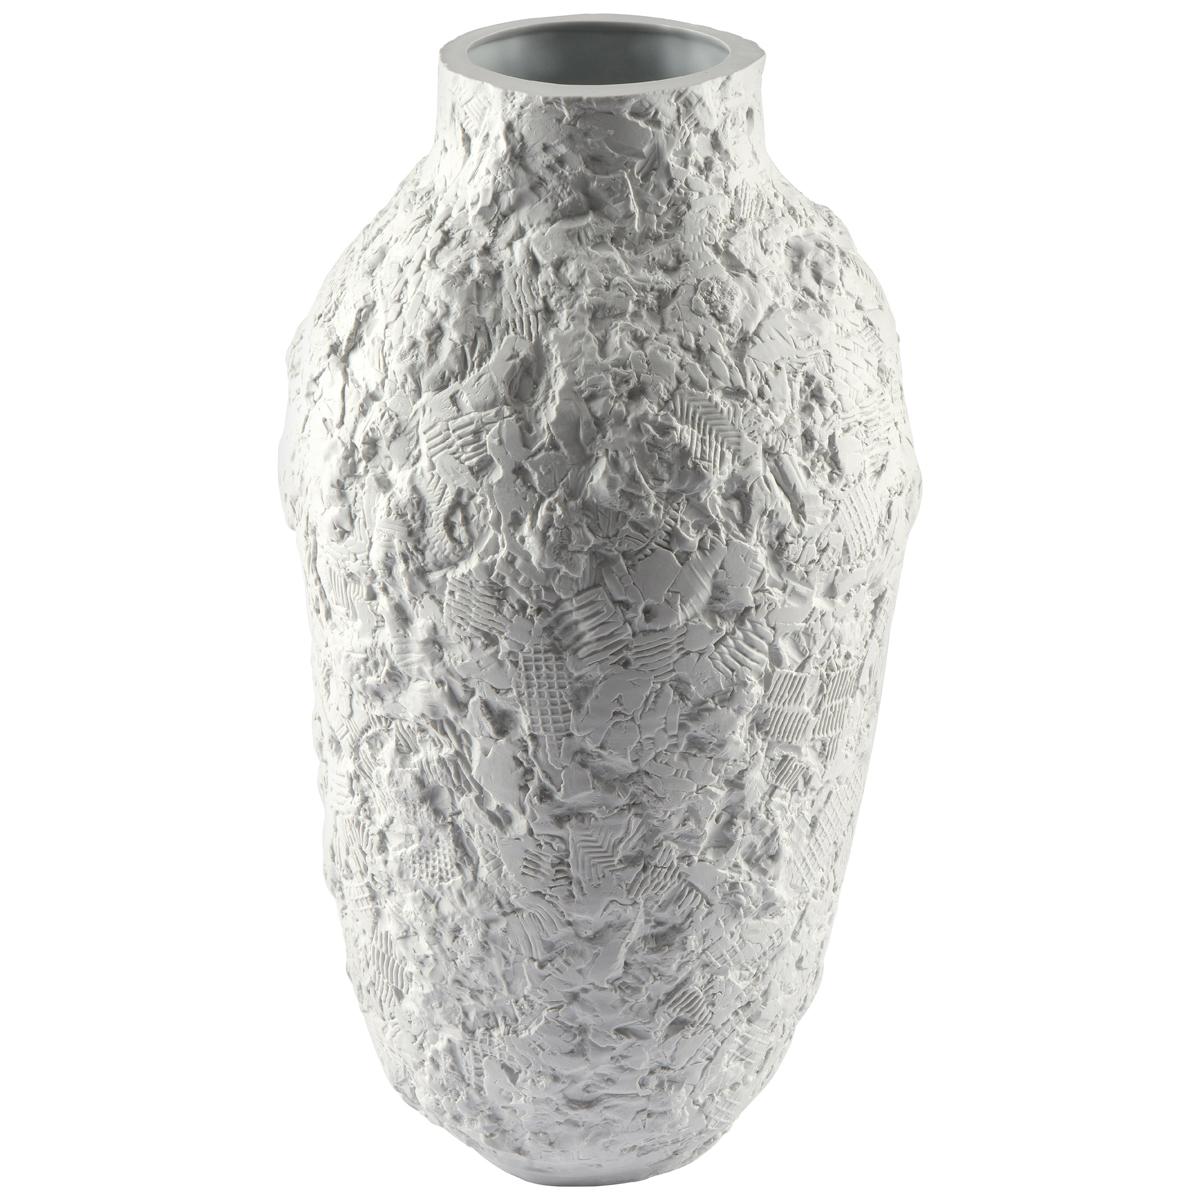 Esker-Vase aus Biskuitporzellan des 21. Jahrhunderts von POL